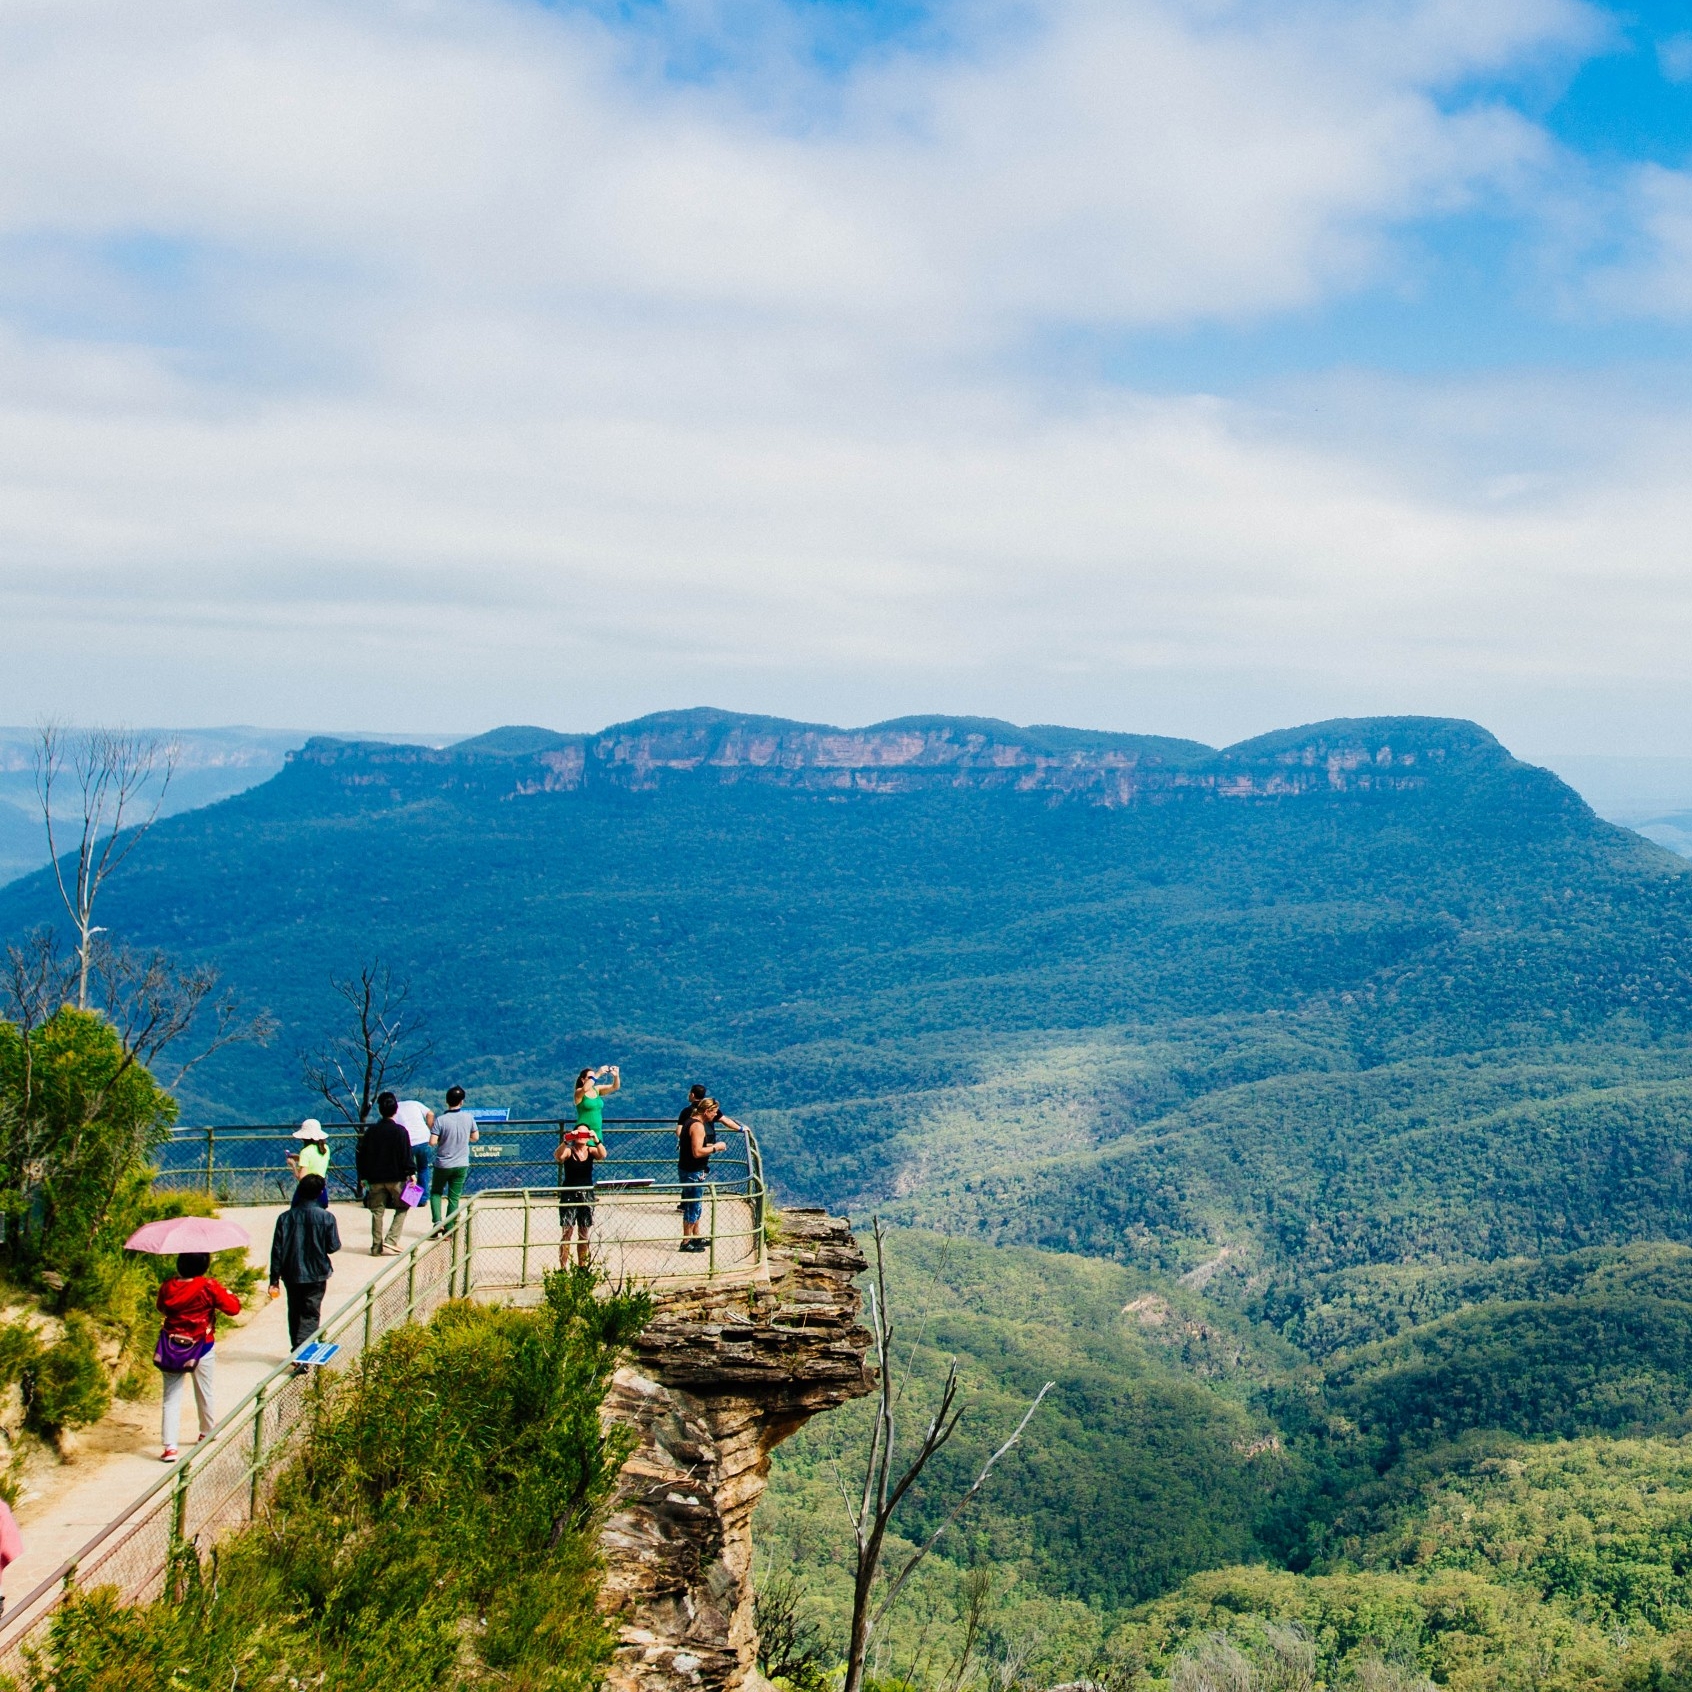 从新南威尔士州的蓝山观景点看到的蓝雾 © 澳大利亚旅游局版权所有